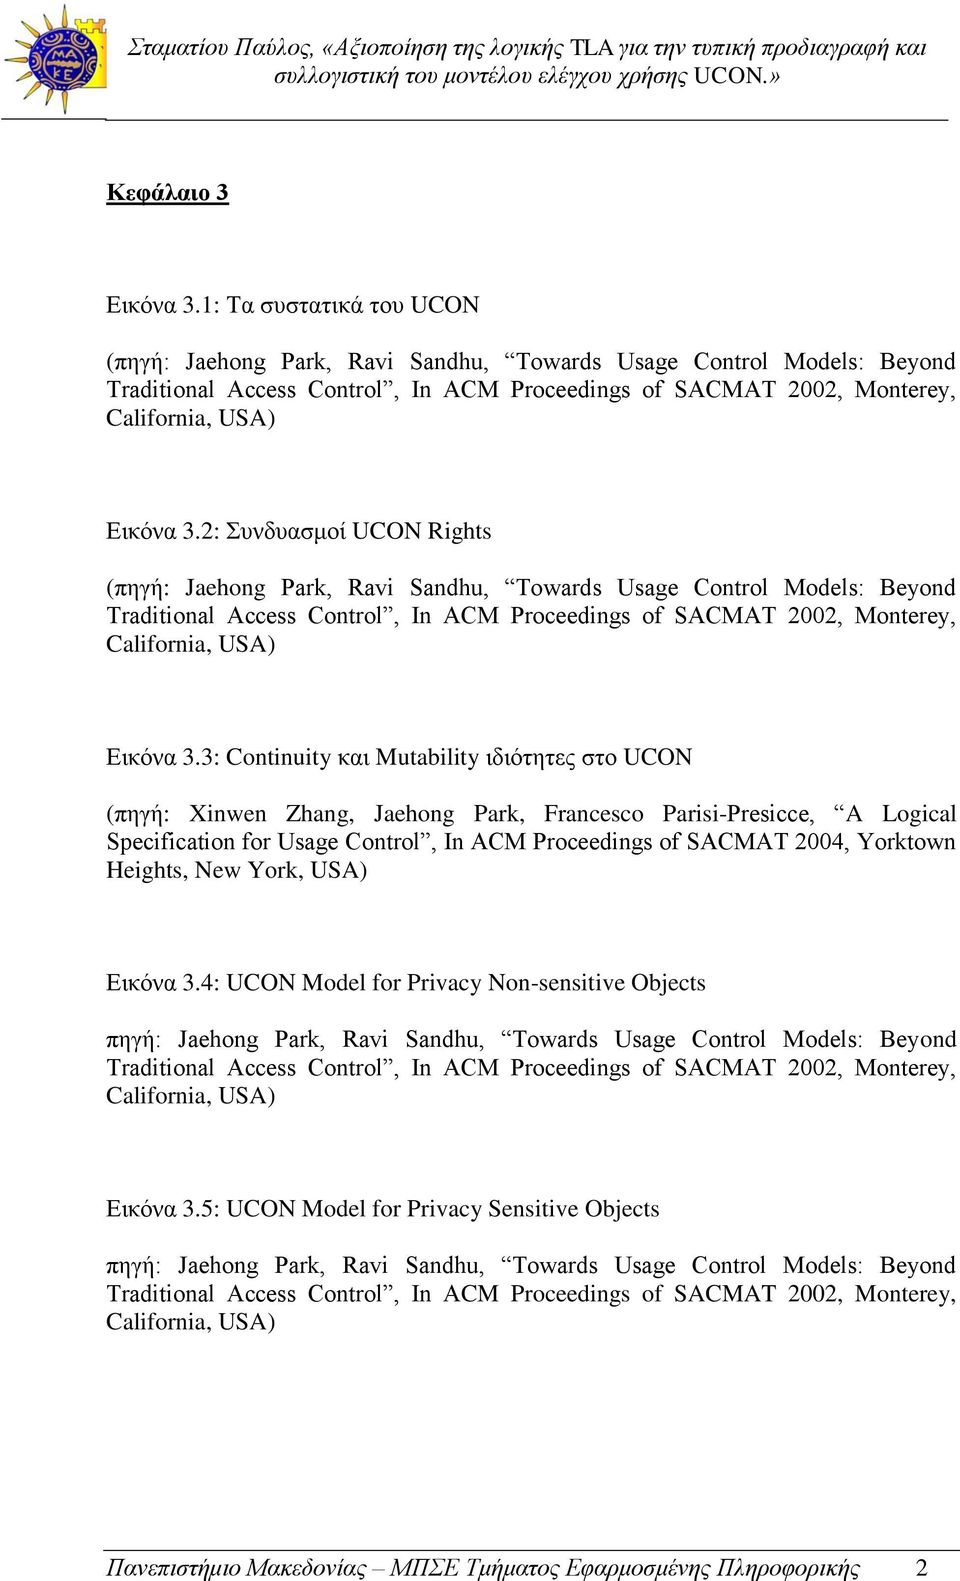 2: Συνδυασμοί UCON Rights (πηγή: Jaehong Park, Ravi Sandhu, Towards Usage Control Models: Beyond Traditional Access Control, In ACM Proceedings of SACMAT 2002, Monterey, California, USA) Εικόνα 3.